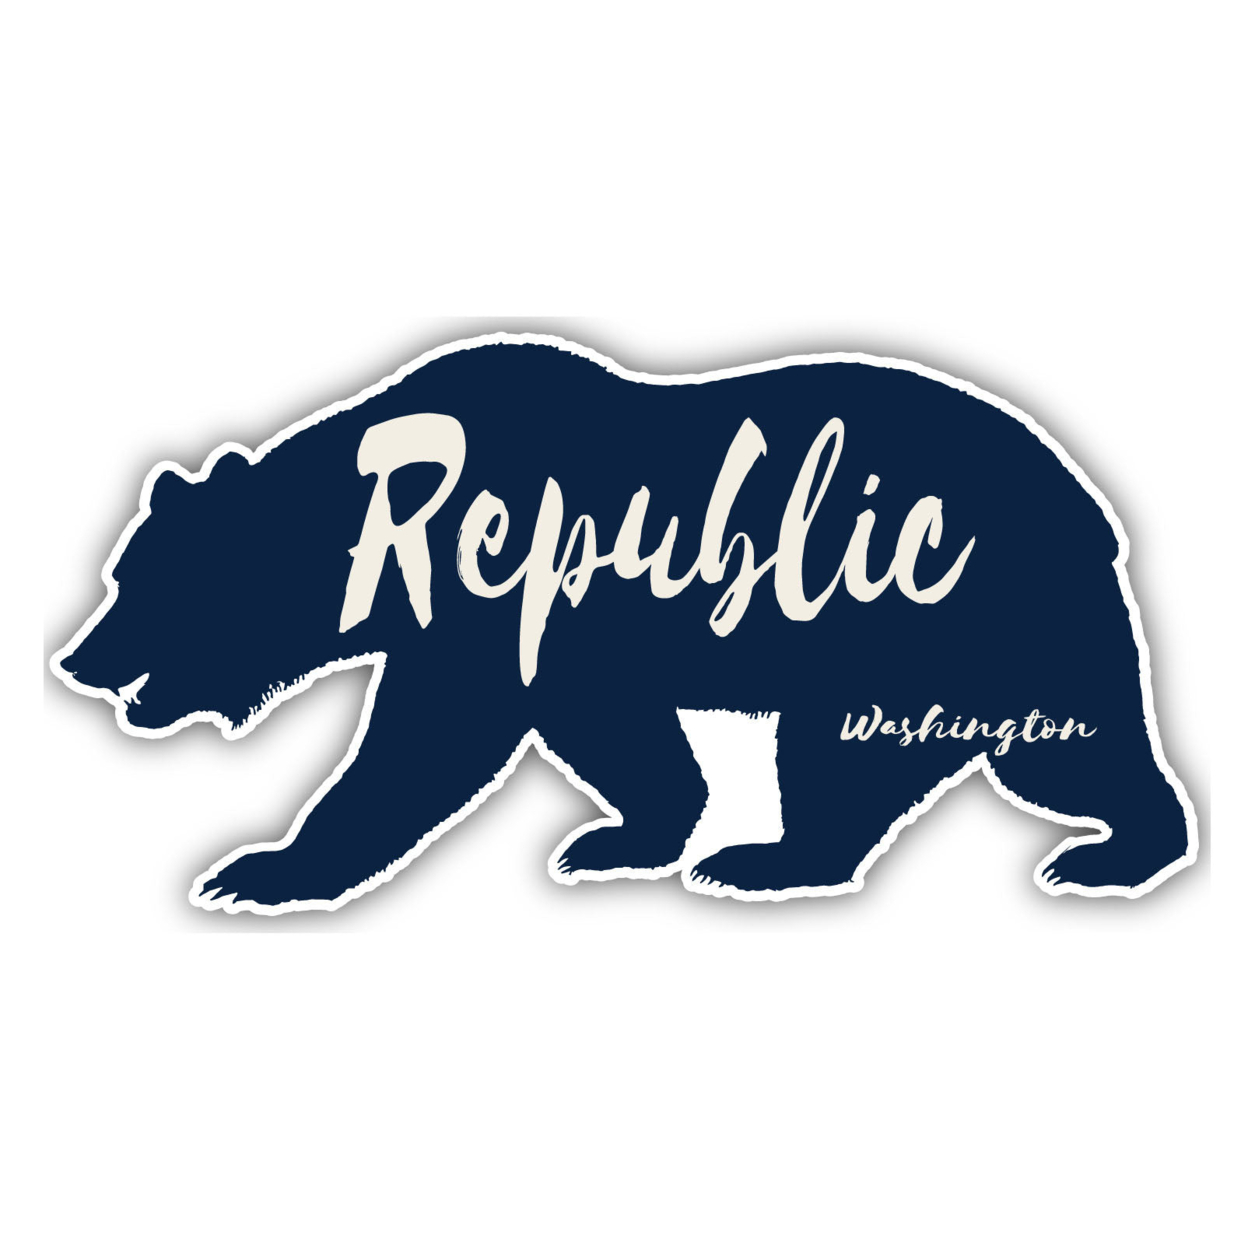 Republic Washington Souvenir Decorative Stickers (Choose Theme And Size) - Single Unit, 2-Inch, Tent